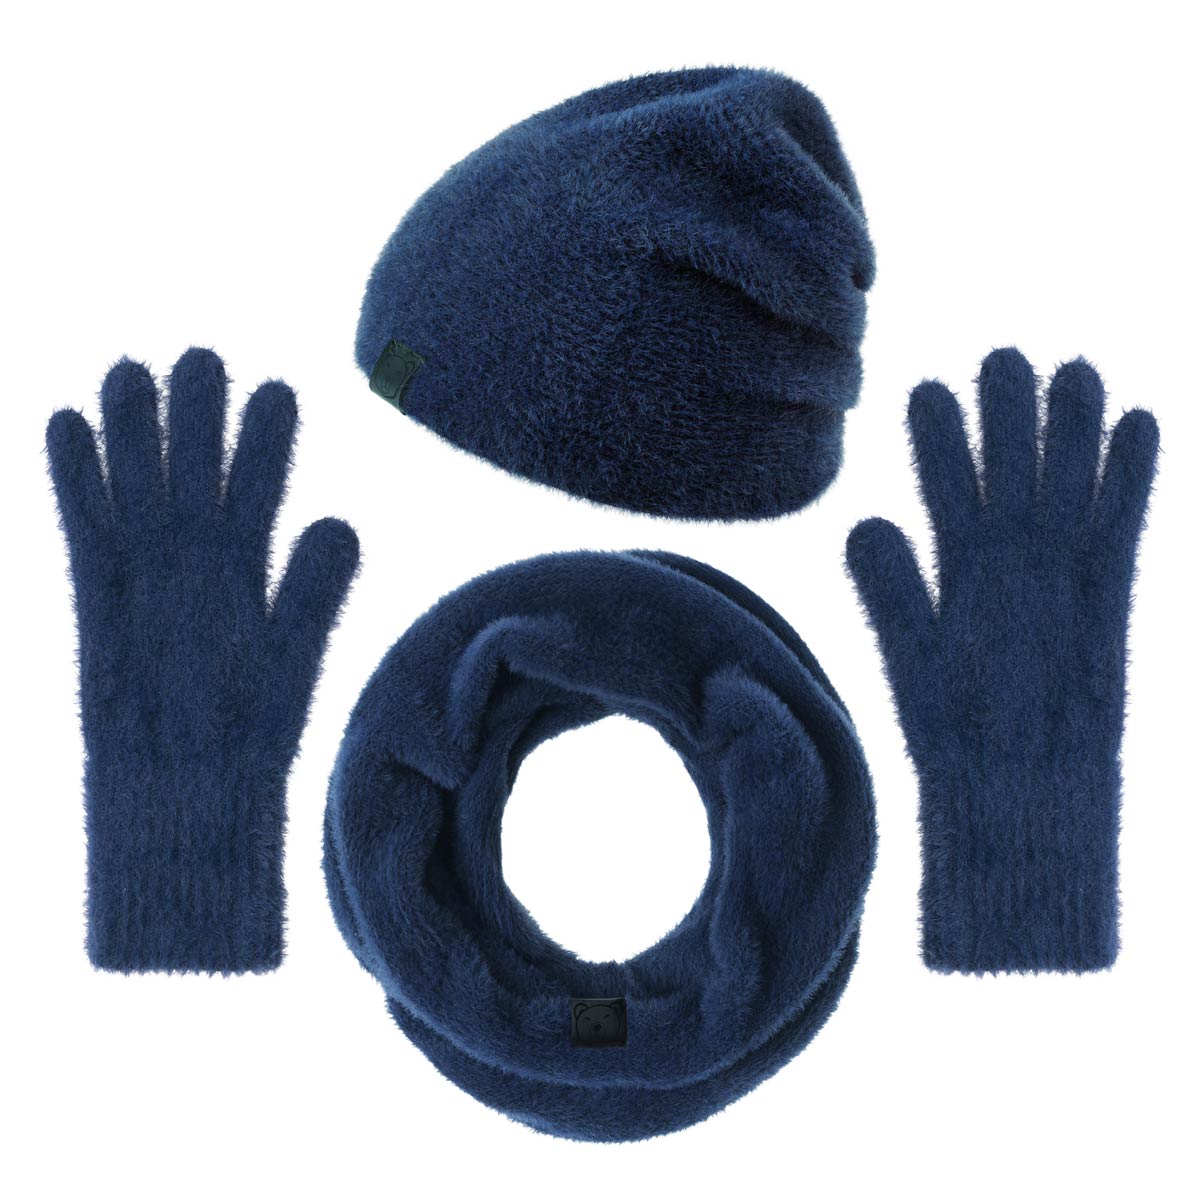 PK-00137_F12-1--_Ensemble-femme-bonnet-snood-gants-bleu-marine